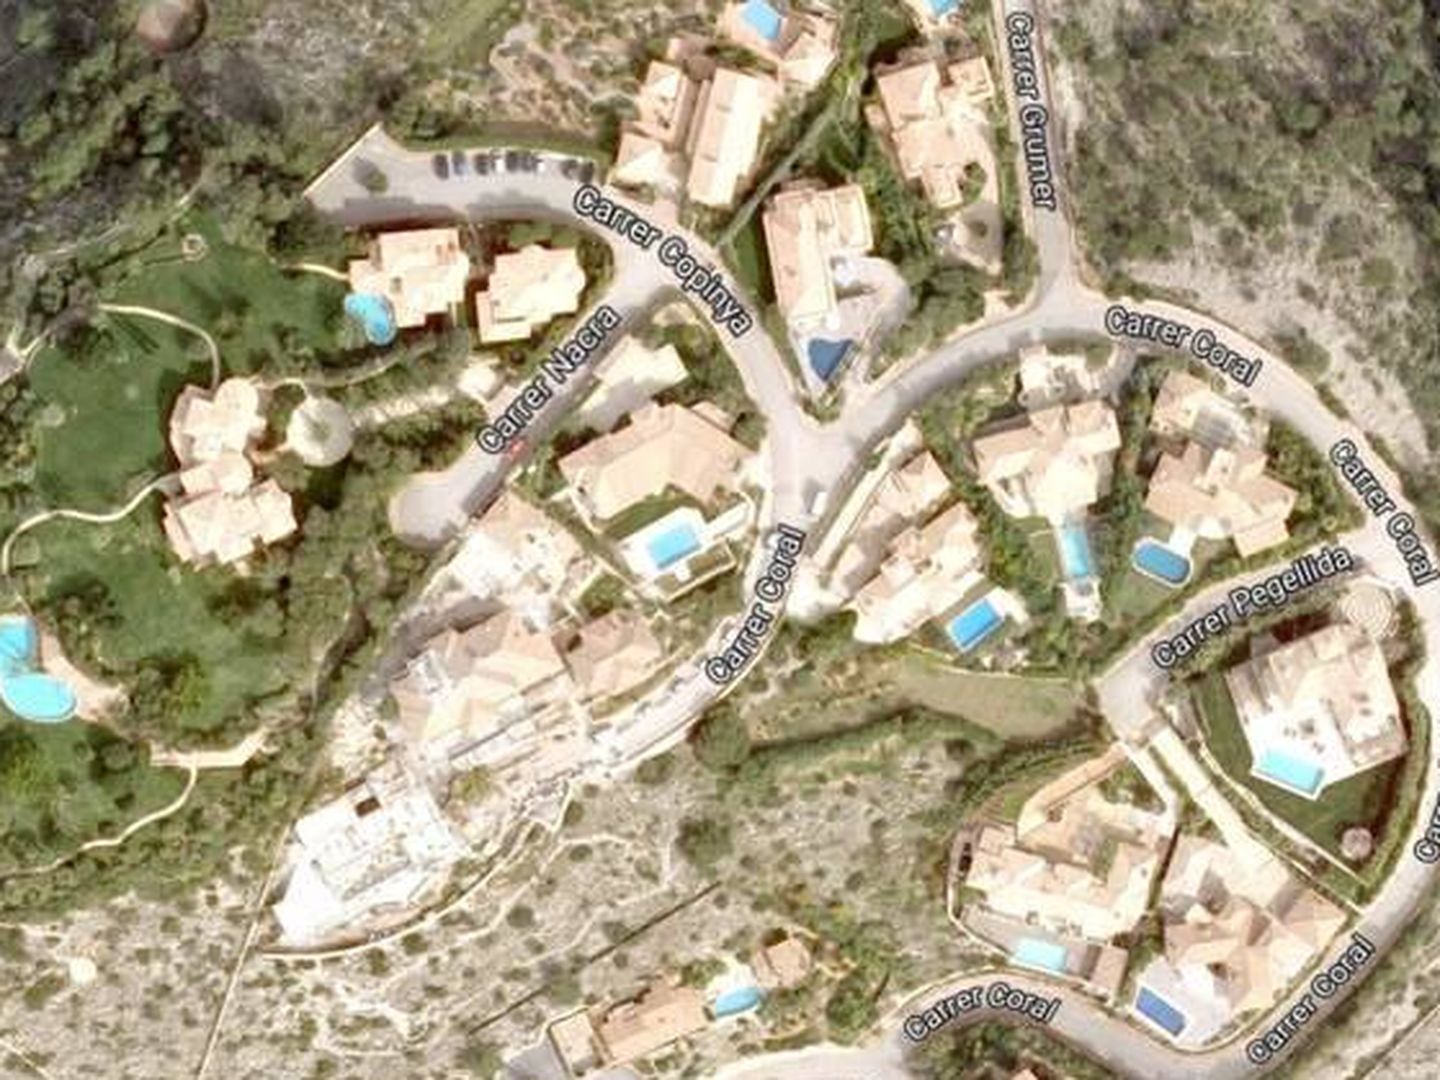 Vista aérea de la urbanización 'Las Brisas', donde se ubica la mansión de los Schumacher. (Google)